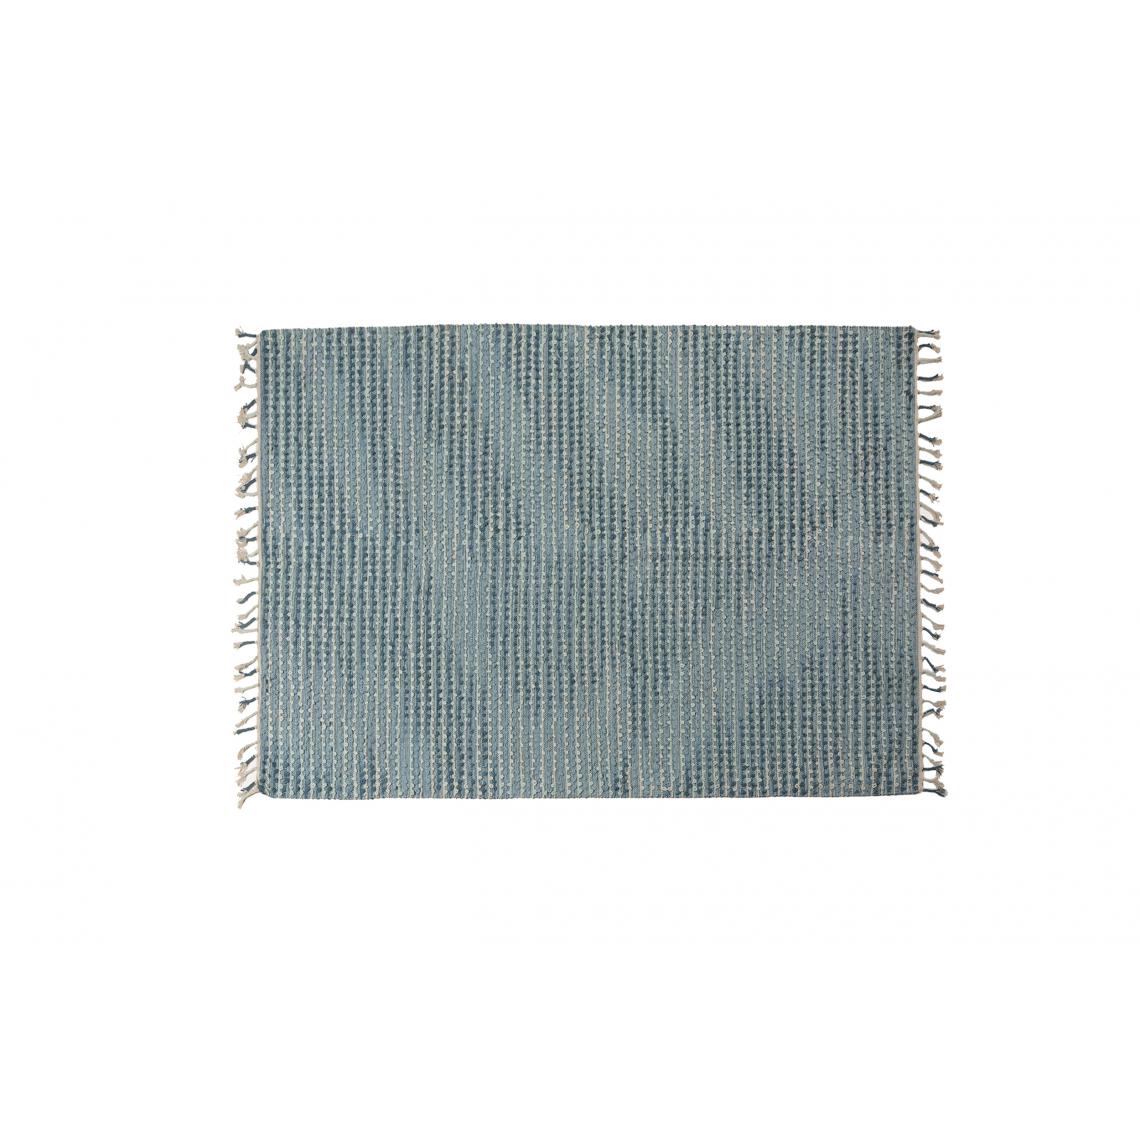 Alter - Tapis moderne Atlanta, style kilim, 100% coton, bleu clair, 200x140cm - Tapis